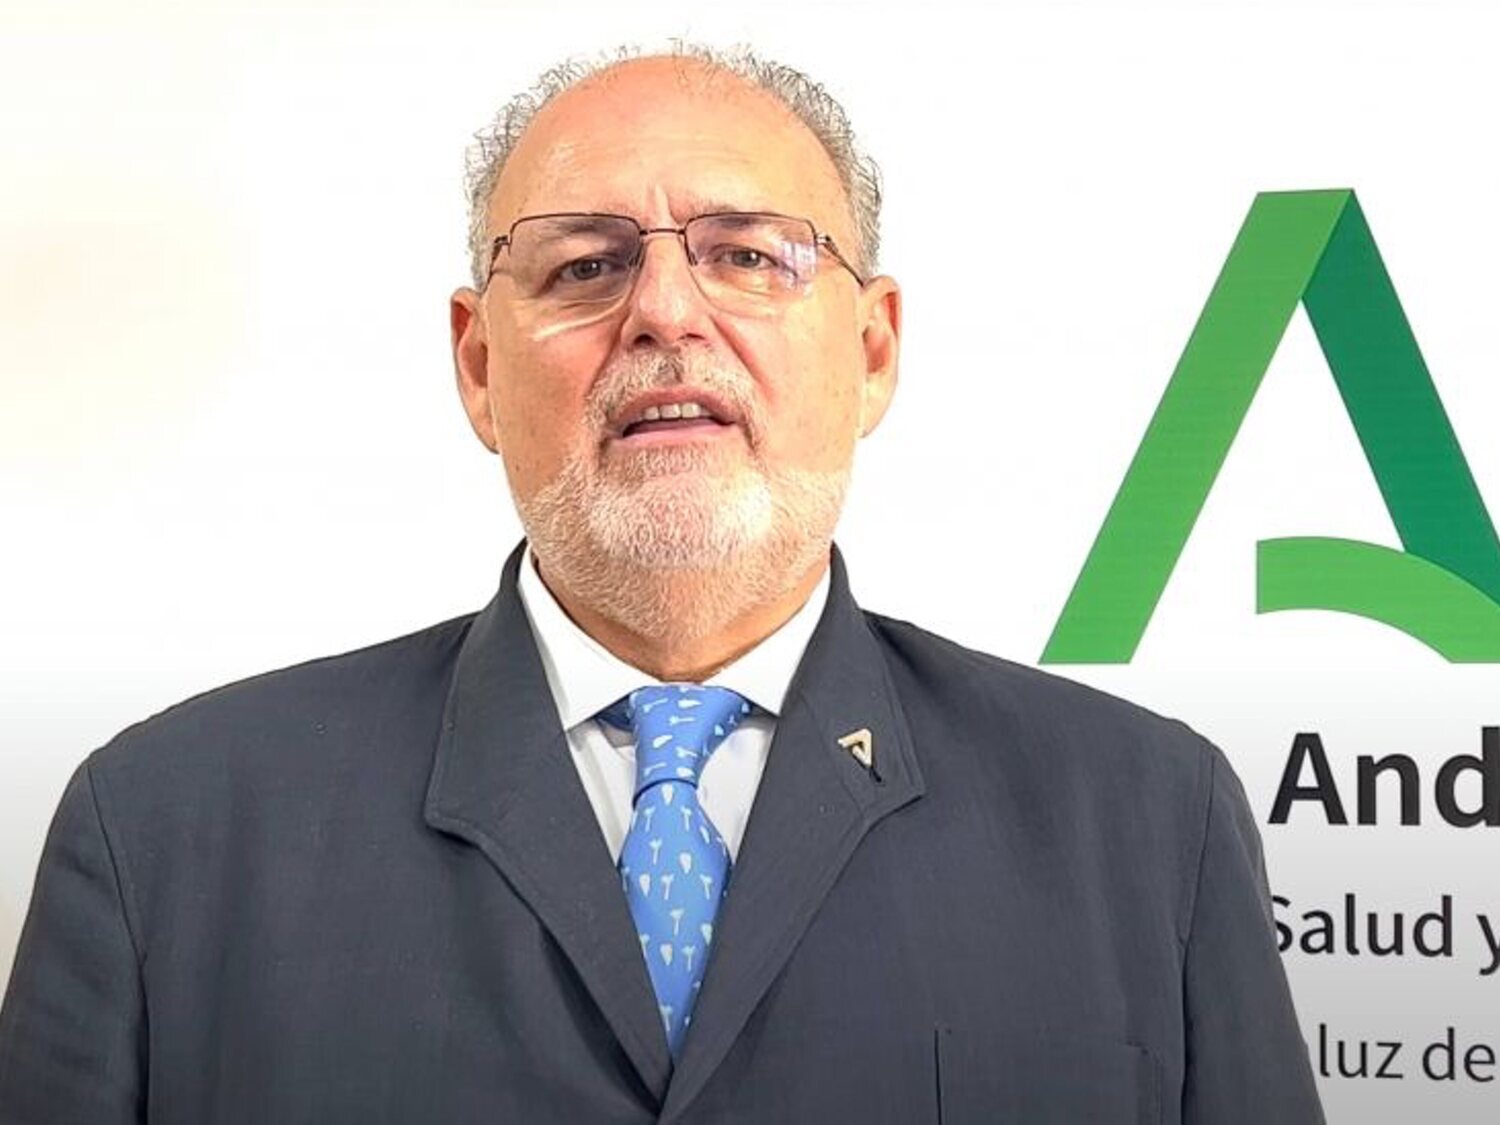 El ex viceconsejero de Salud de Andalucía ficha por una de las aseguradoras privadas más importantes